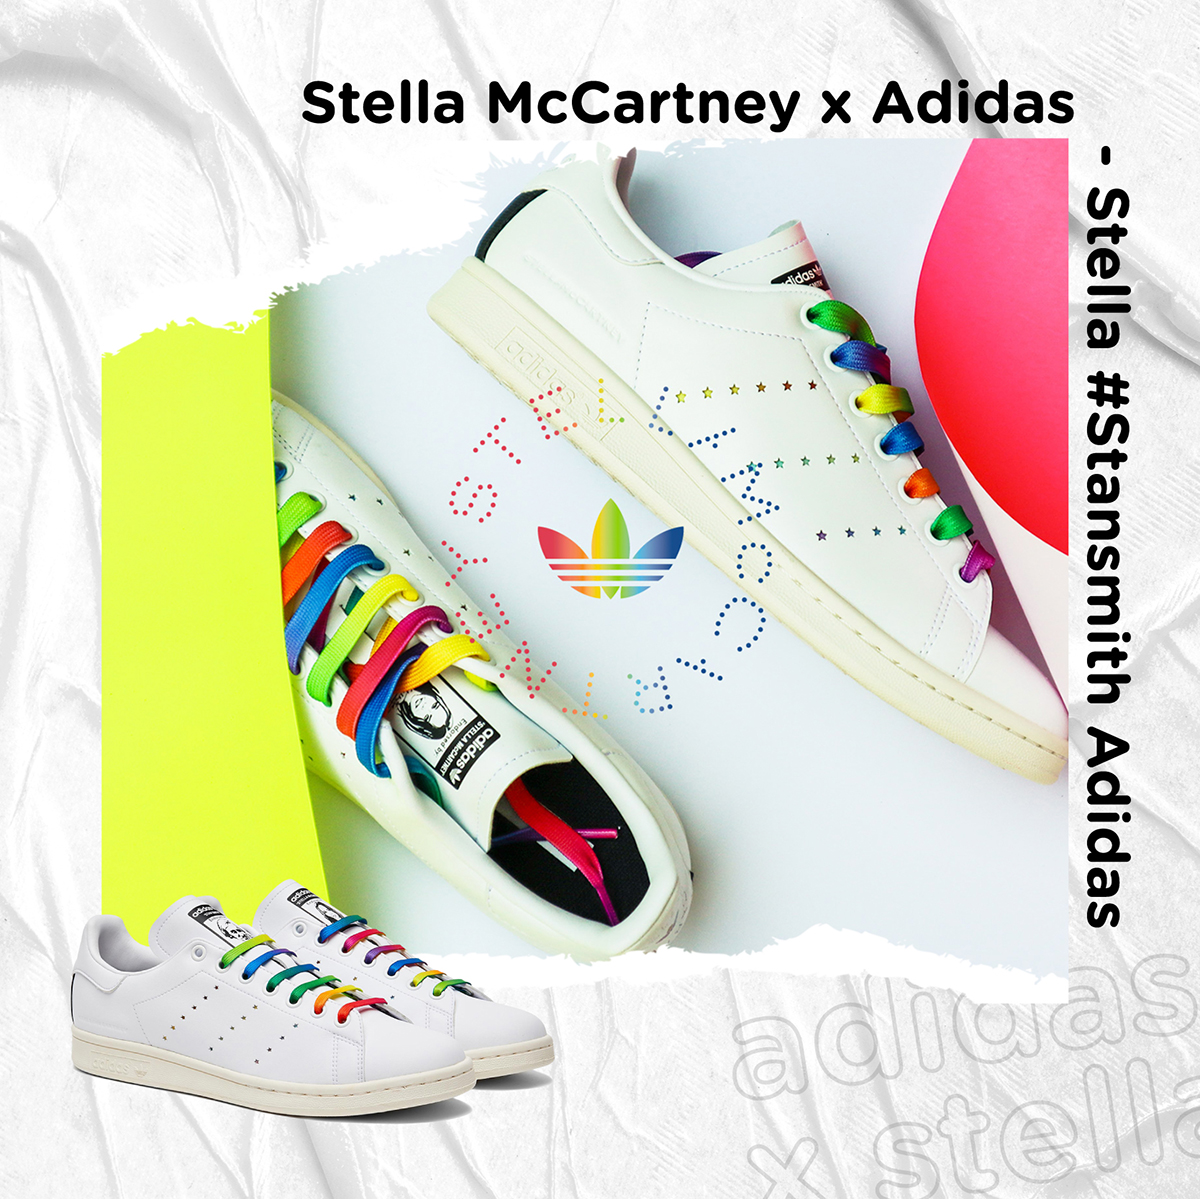 Stella McCartney x Adidas - Stella #Stansmith Adidas